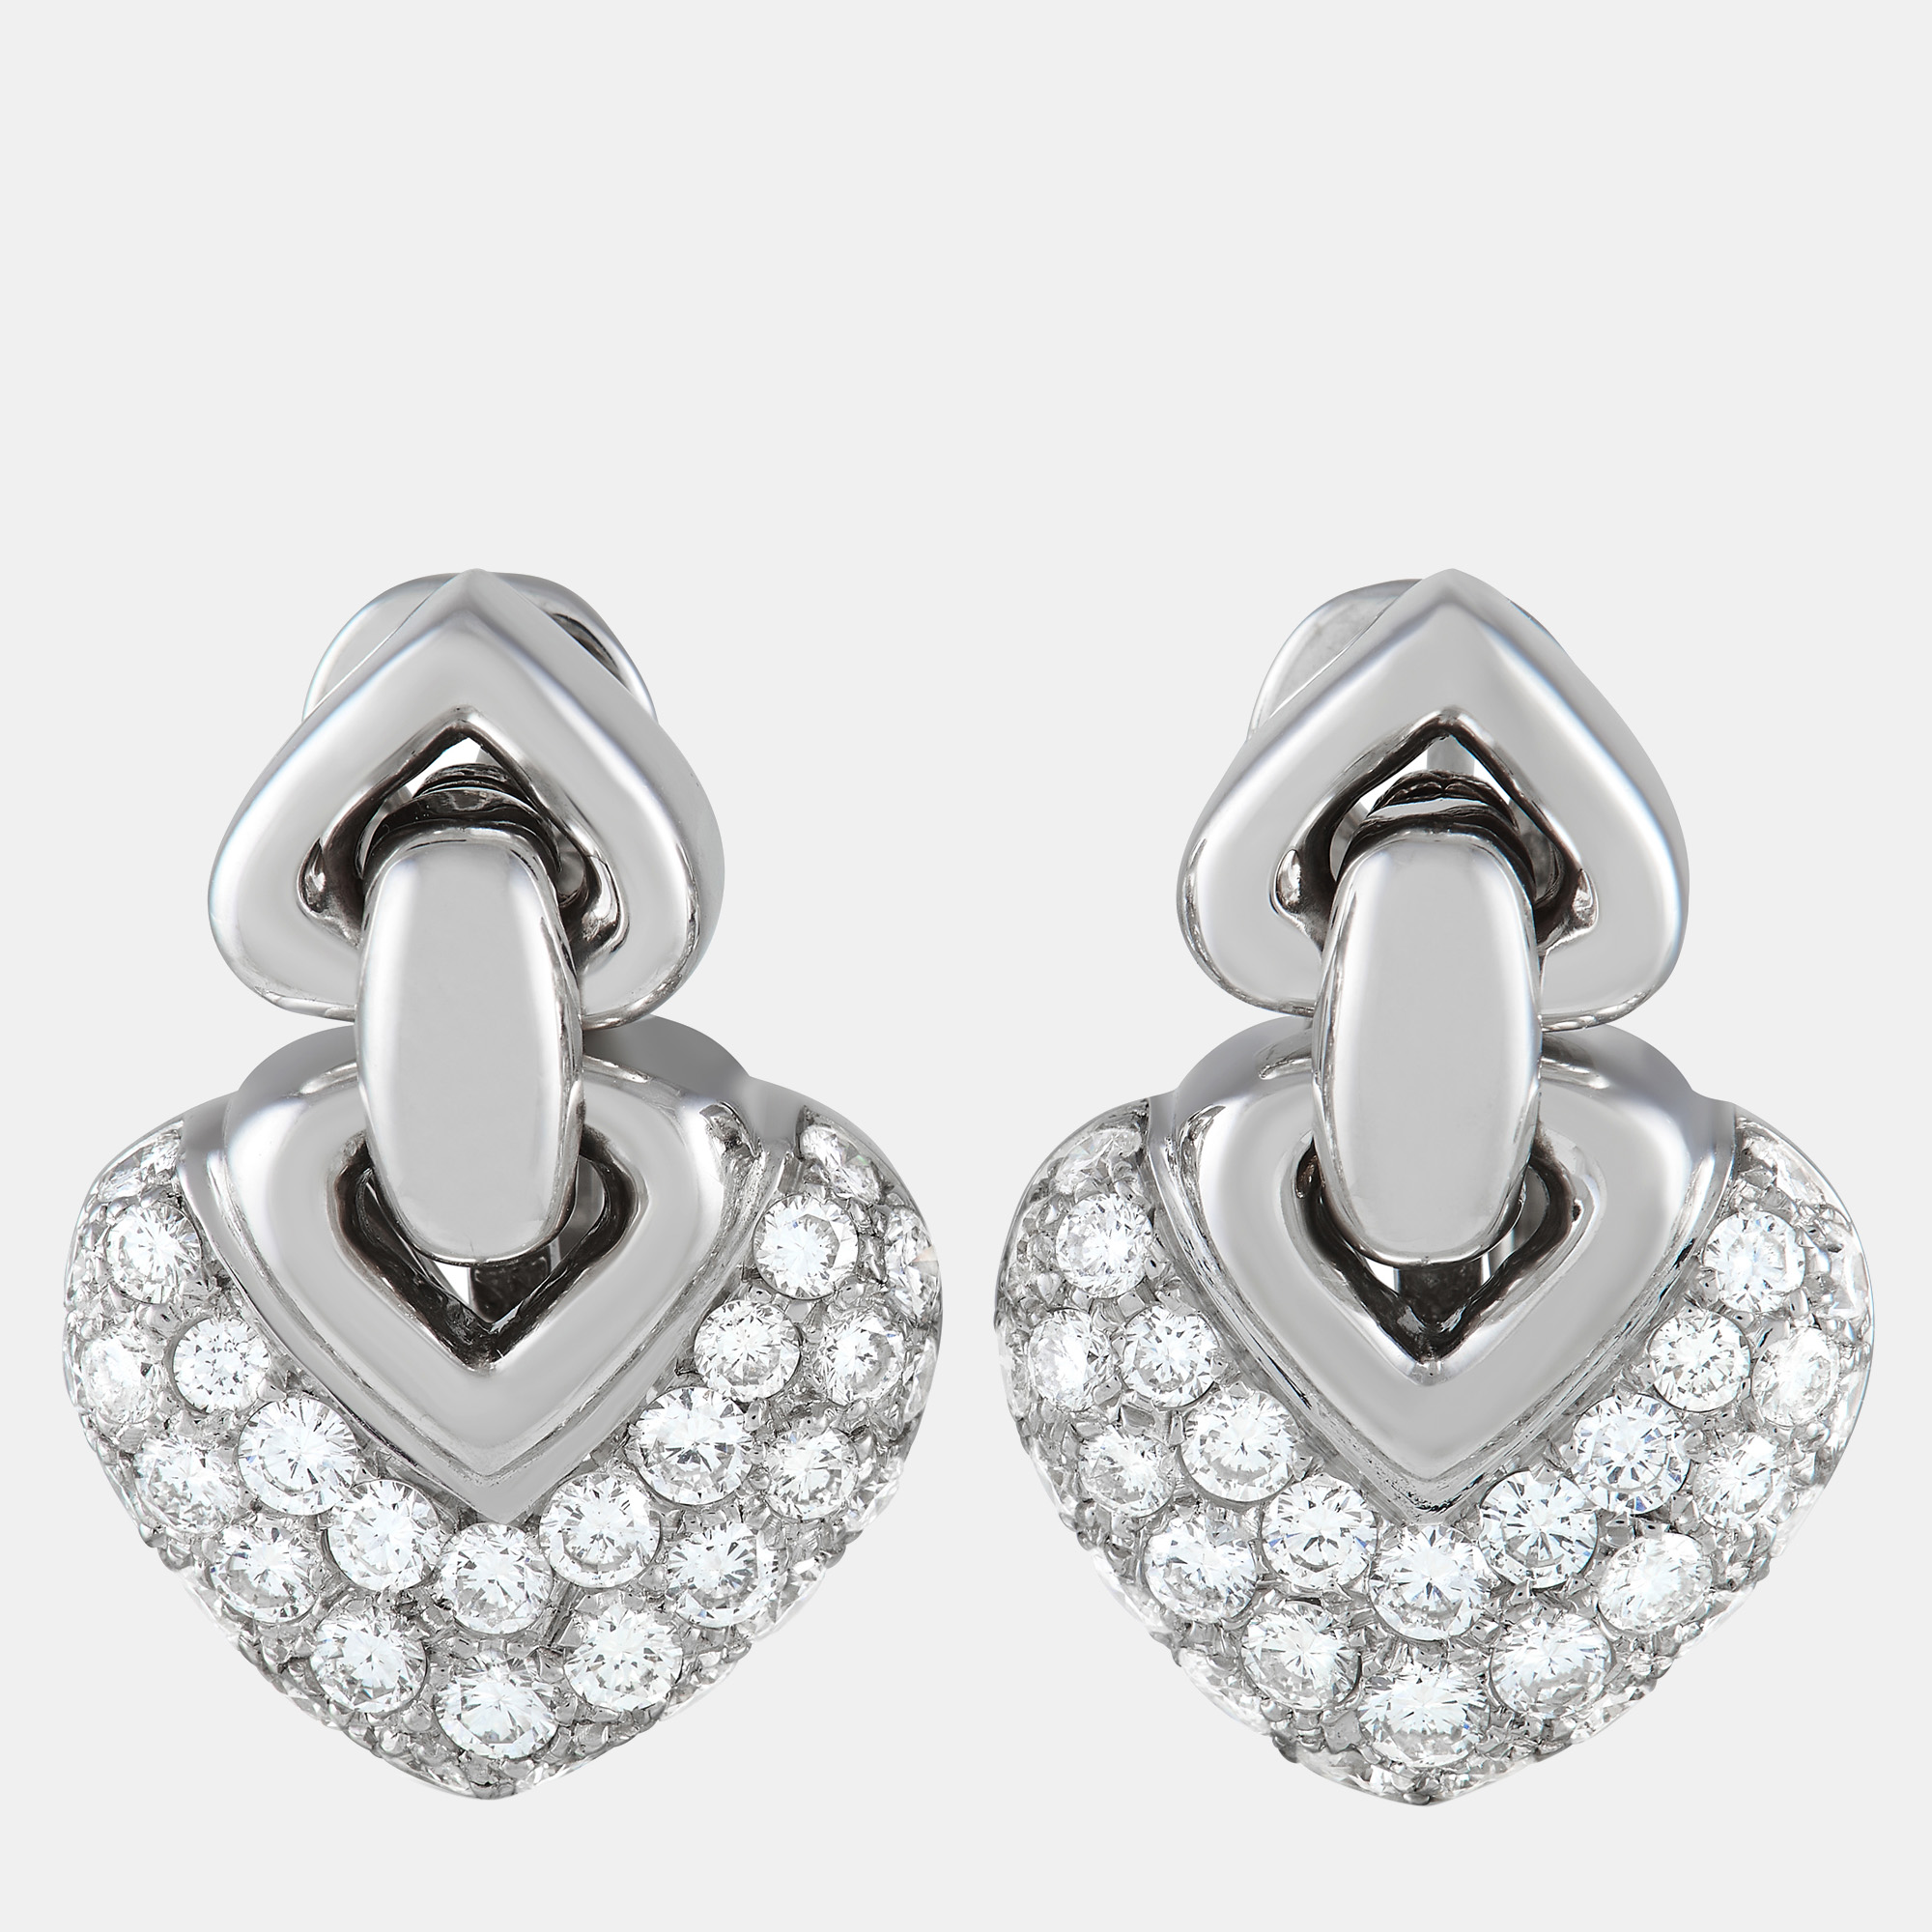 Bvlgari doppio cuore 18k white gold 2.25 ct diamond earrings